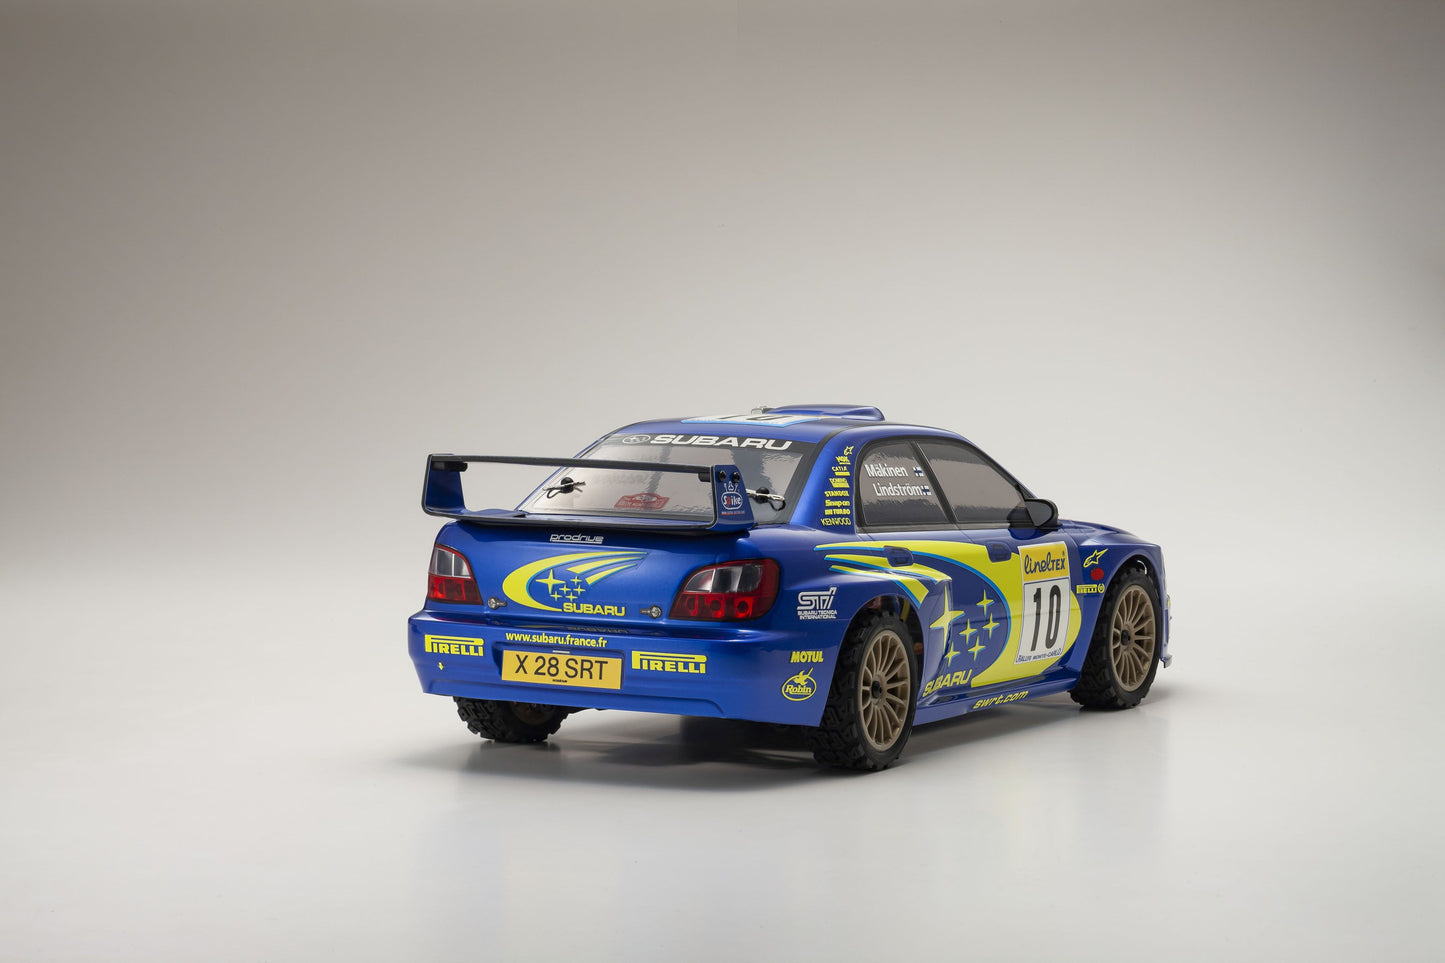 2002 Subaru Impreza WRC 34481T1